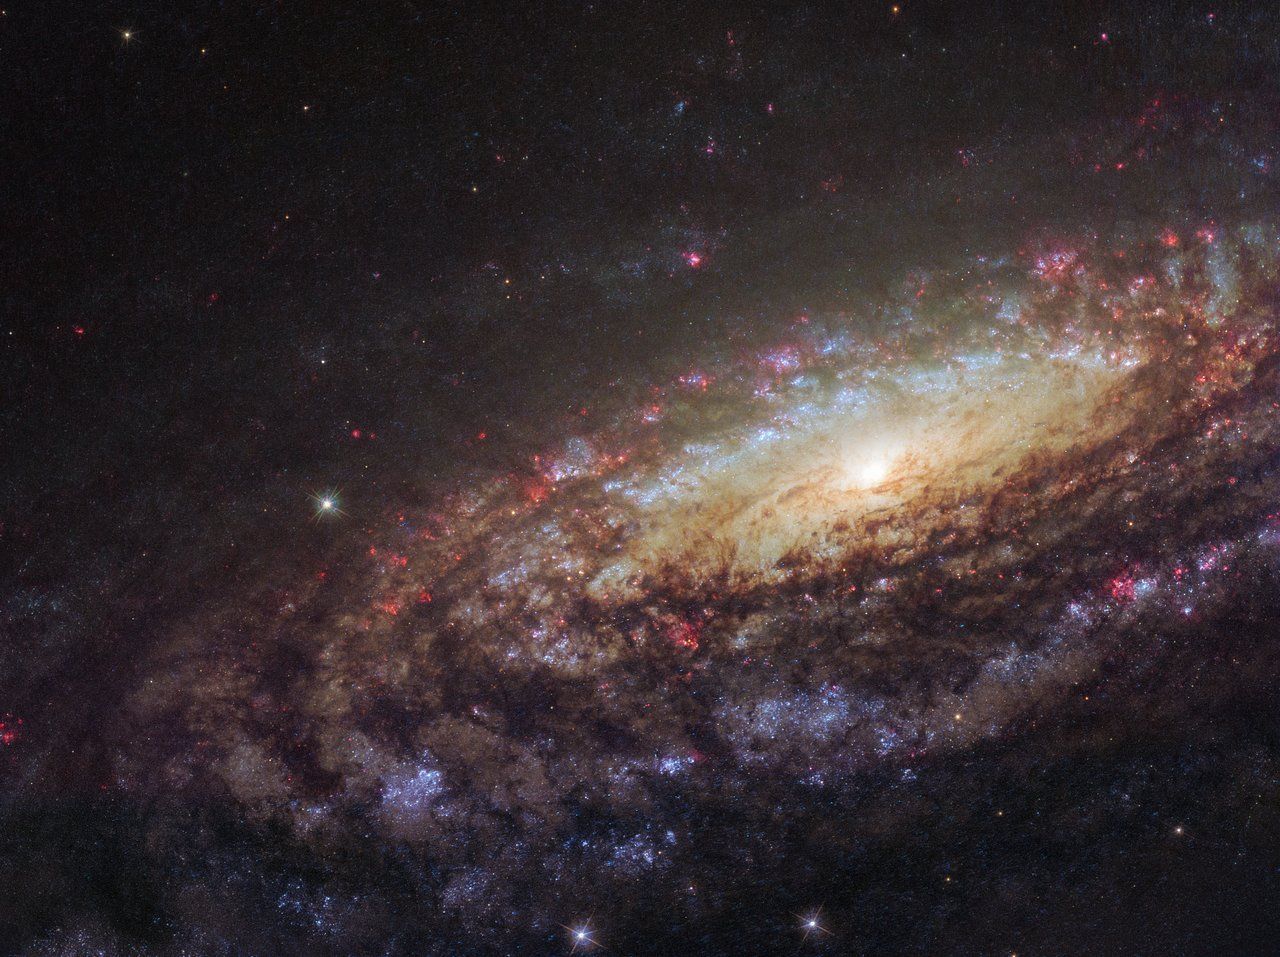 Oh, du schöne Spiralgalaxie “NGC 7331“! Schon im Jahr 1784 vom Galaxienjäger William Herschel entdeckt, funkelst du noch immer so schön an unserem Nachthimmel.